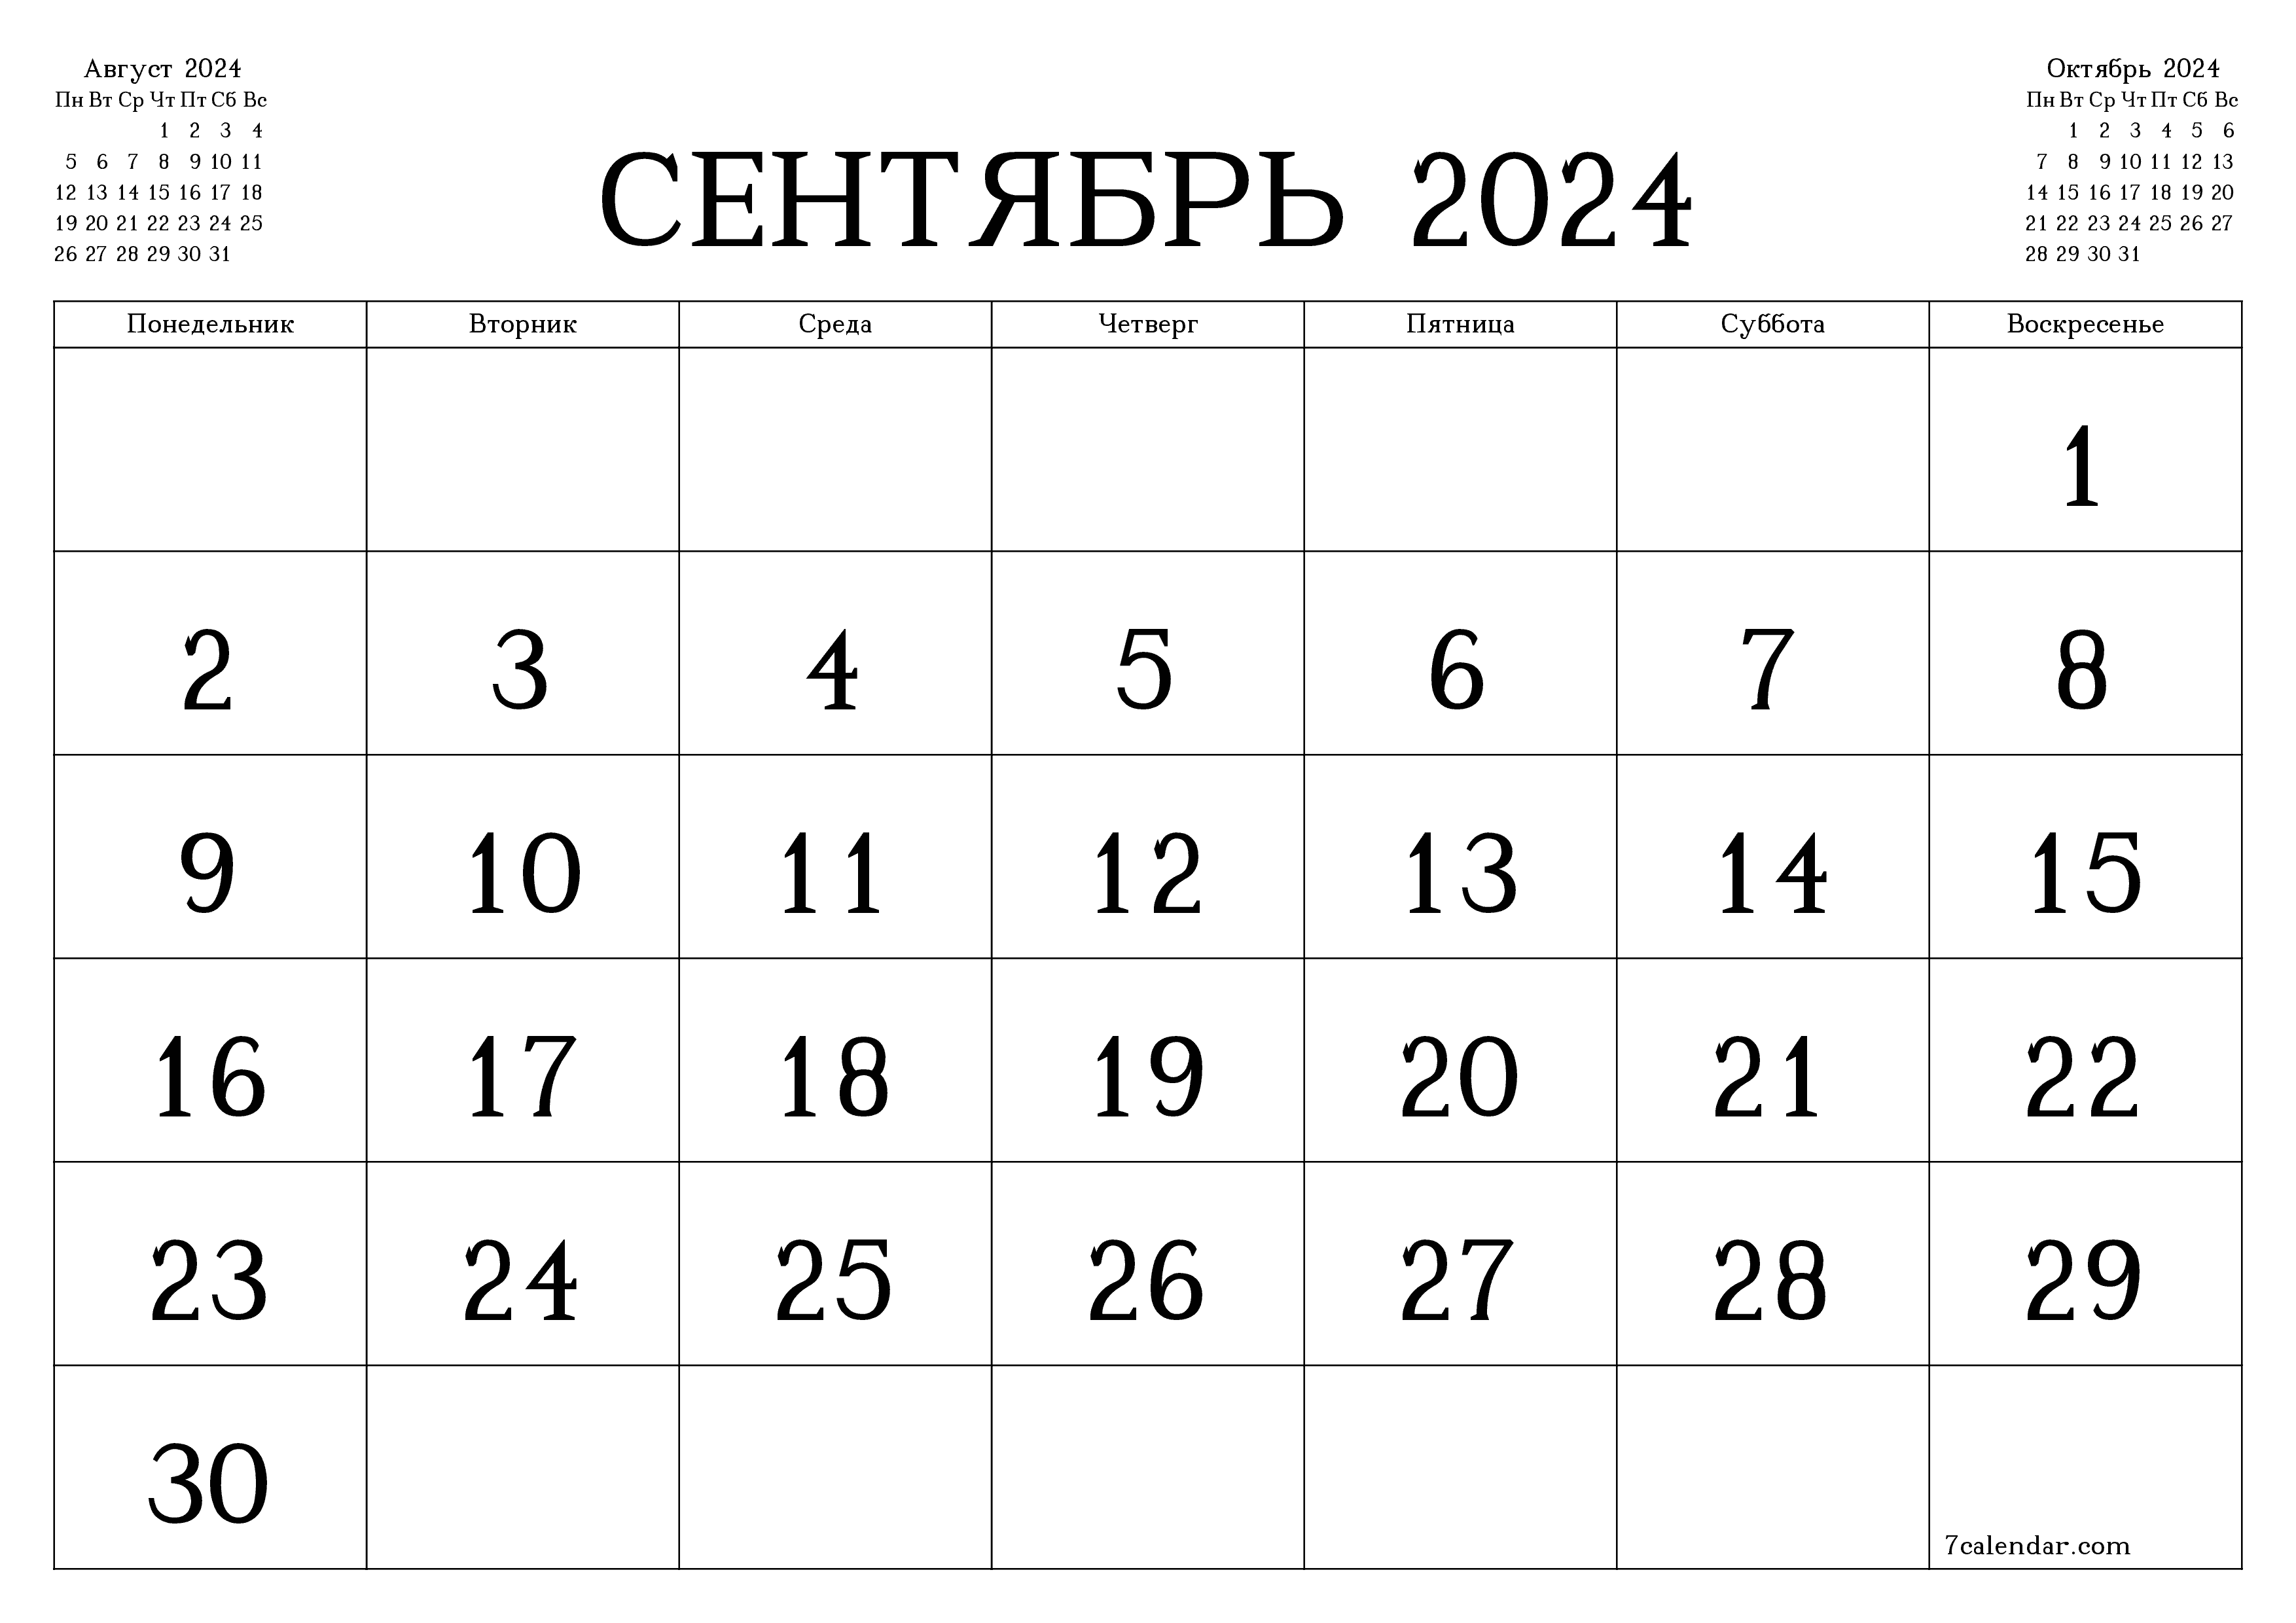 Календари и планеры для печати на месяц Сентябрь 2024 A4, A3 в PDF и PNG -  7calendar